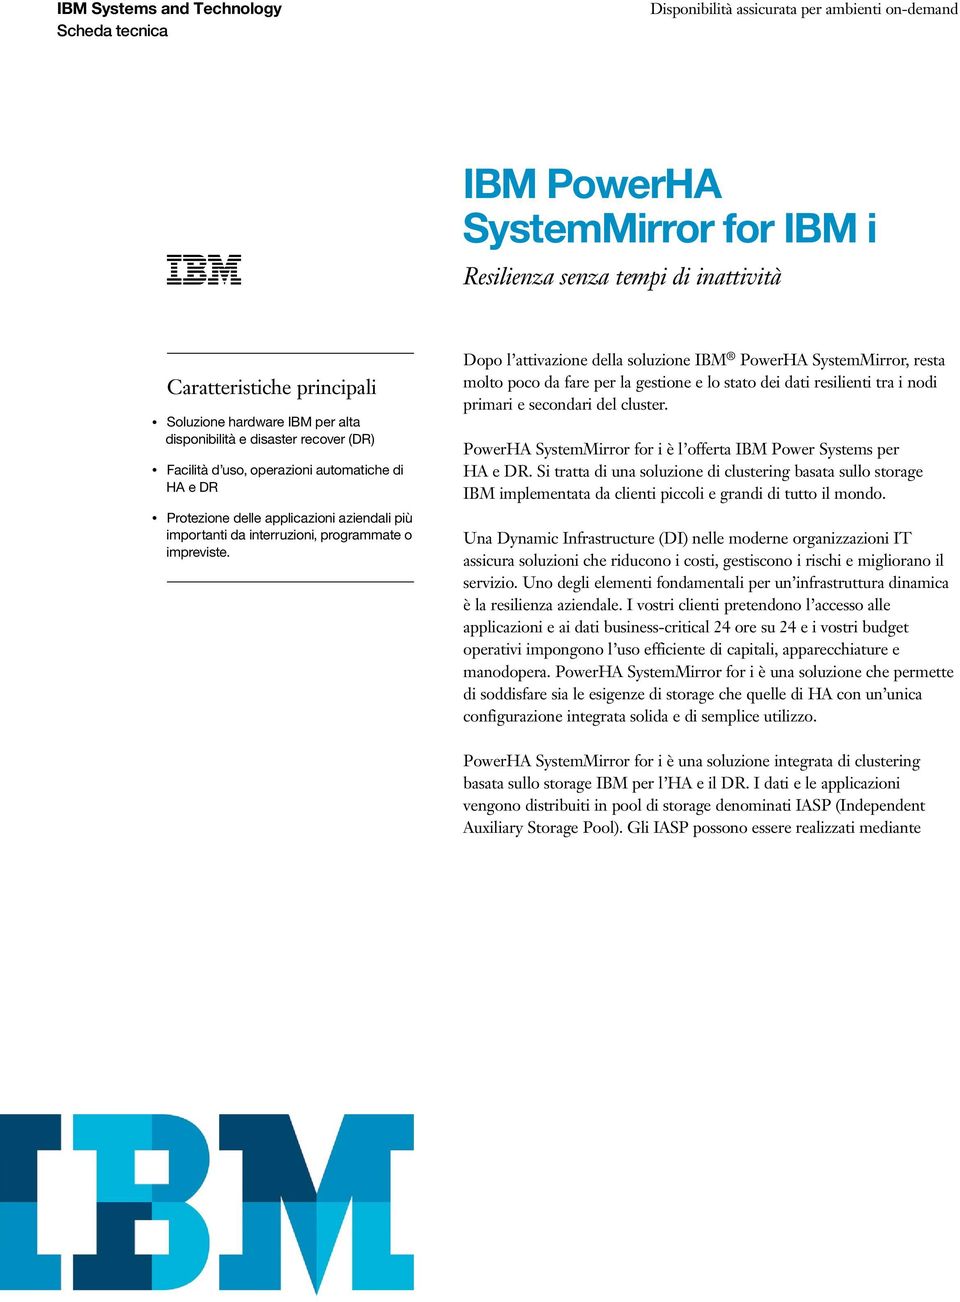 Dopo l attivazione della soluzione IBM PowerHA SystemMirror, resta molto poco da fare per la gestione e lo stato dei dati resilienti tra i nodi primari e secondari del cluster.